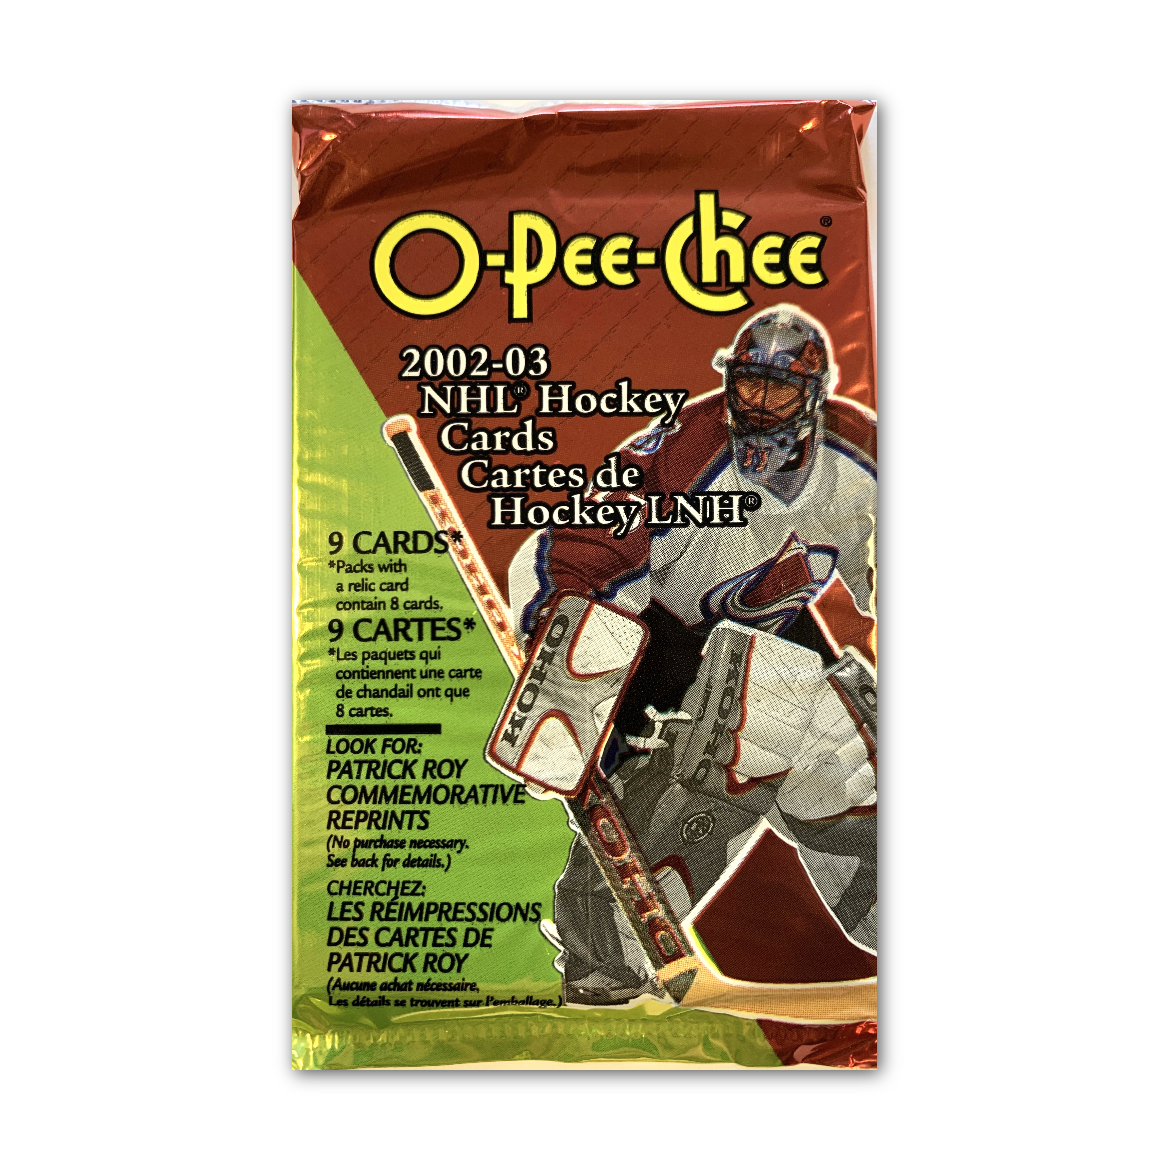 2002-03 O-Pee-Chee NHL Hockey Card Pack